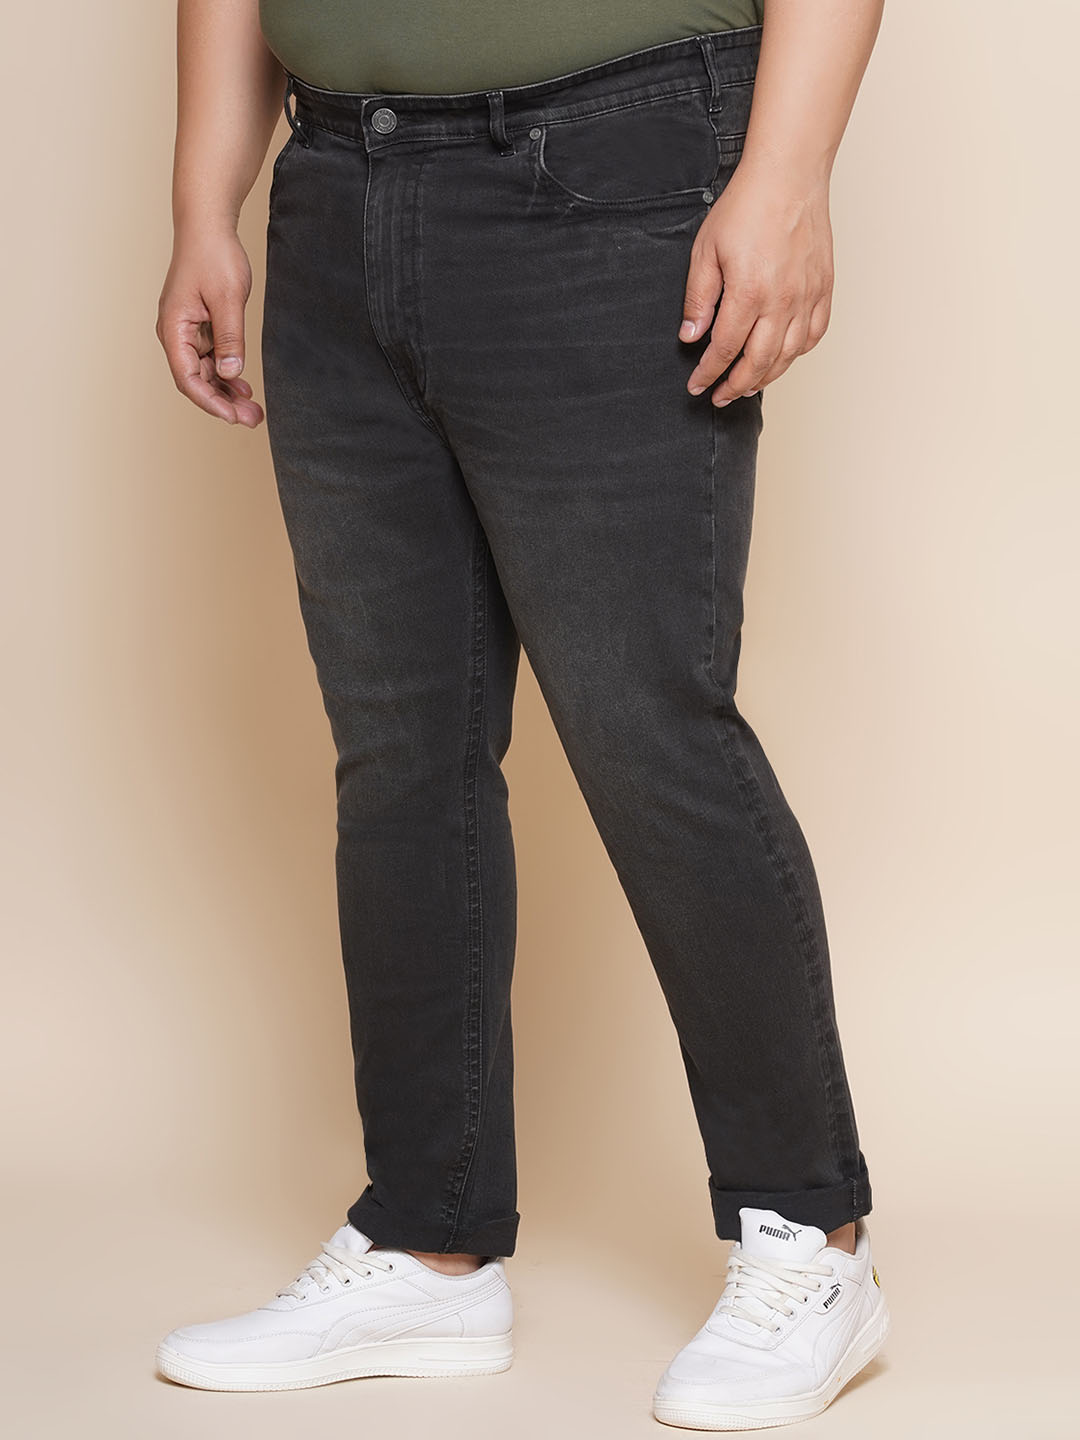 bottomwear/jeans/JPJ12351/jpj12351-4.jpg